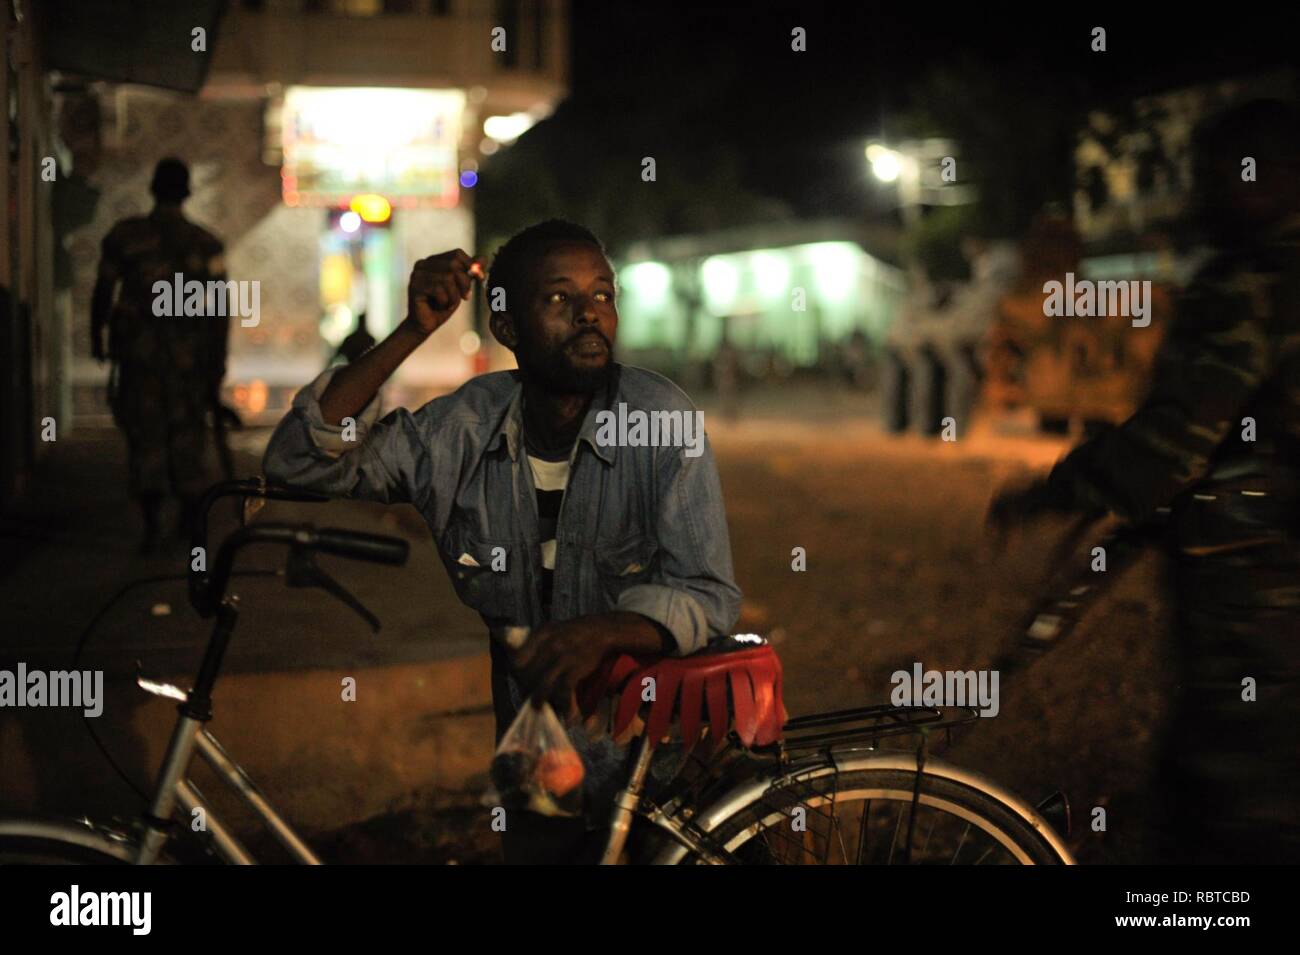 Ein somalischer Mann raucht eine Zigarette, während Äthiopische Soldaten, als Teil der Mission der Afrikanischen Union in Somalia, eine Nacht patrouillieren durch die Stadt Baidoa, Somalia, am 22. Juni. Die AMISOM Foto - Tobin (14332224890). Stockfoto